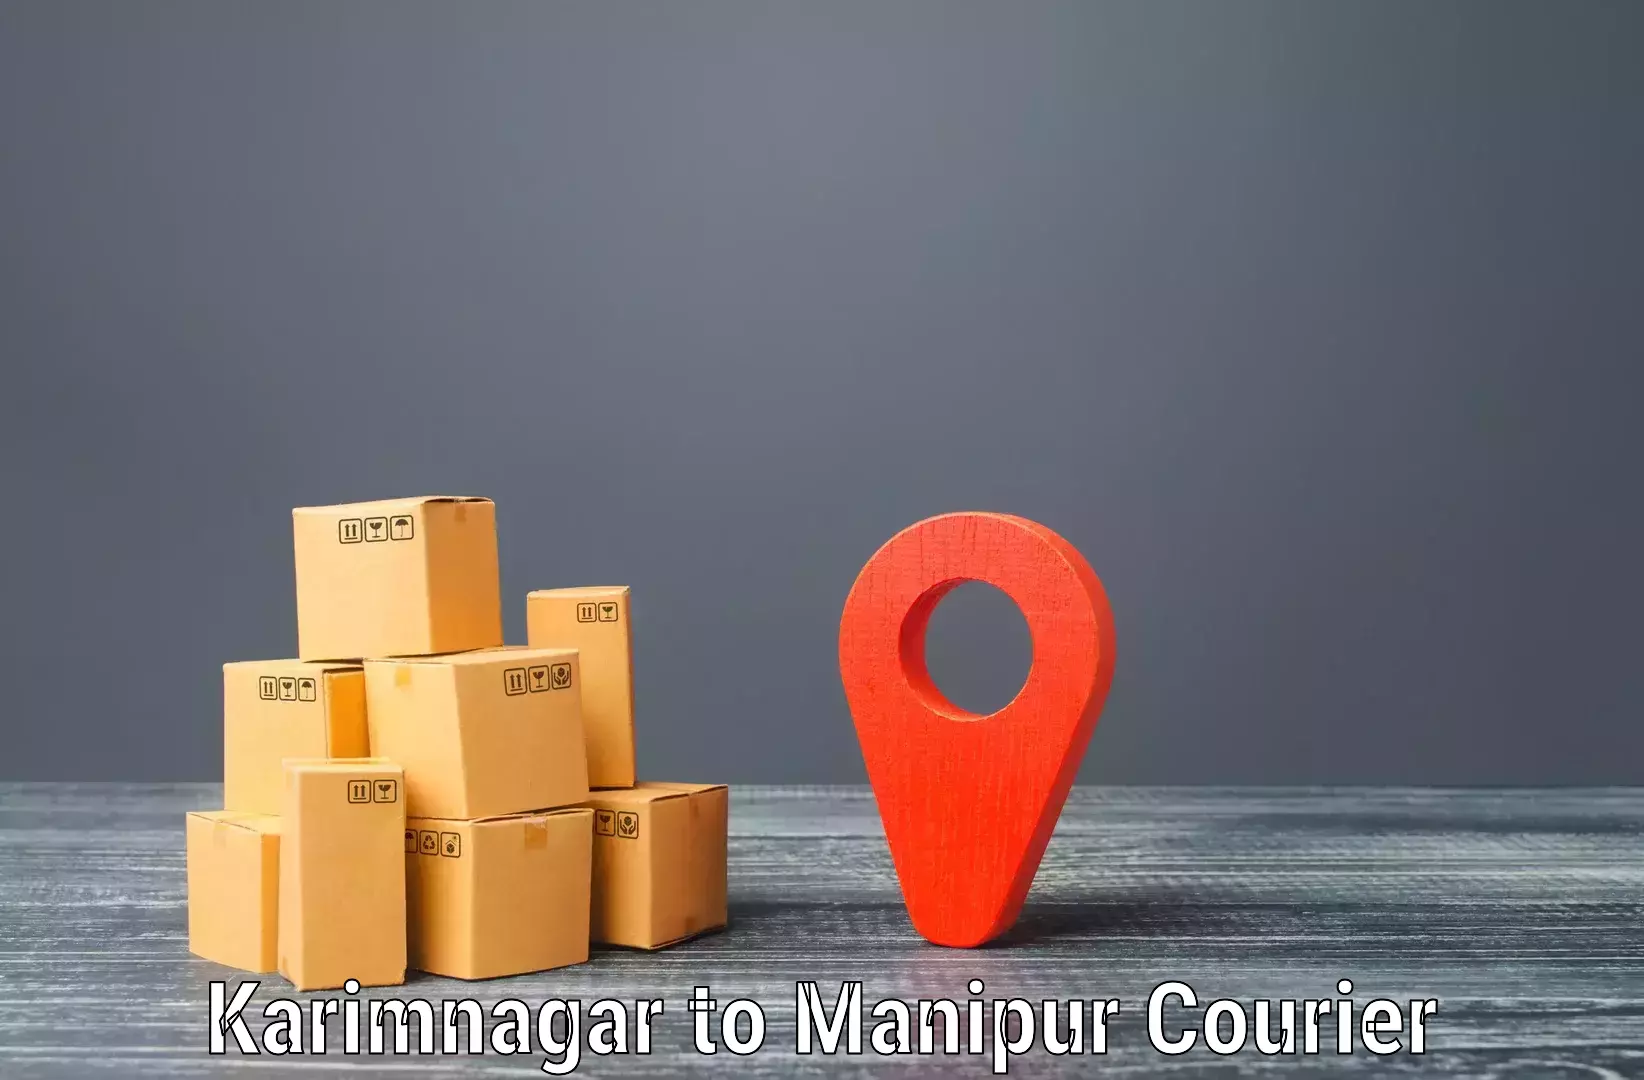 Global shipping networks Karimnagar to Moirang